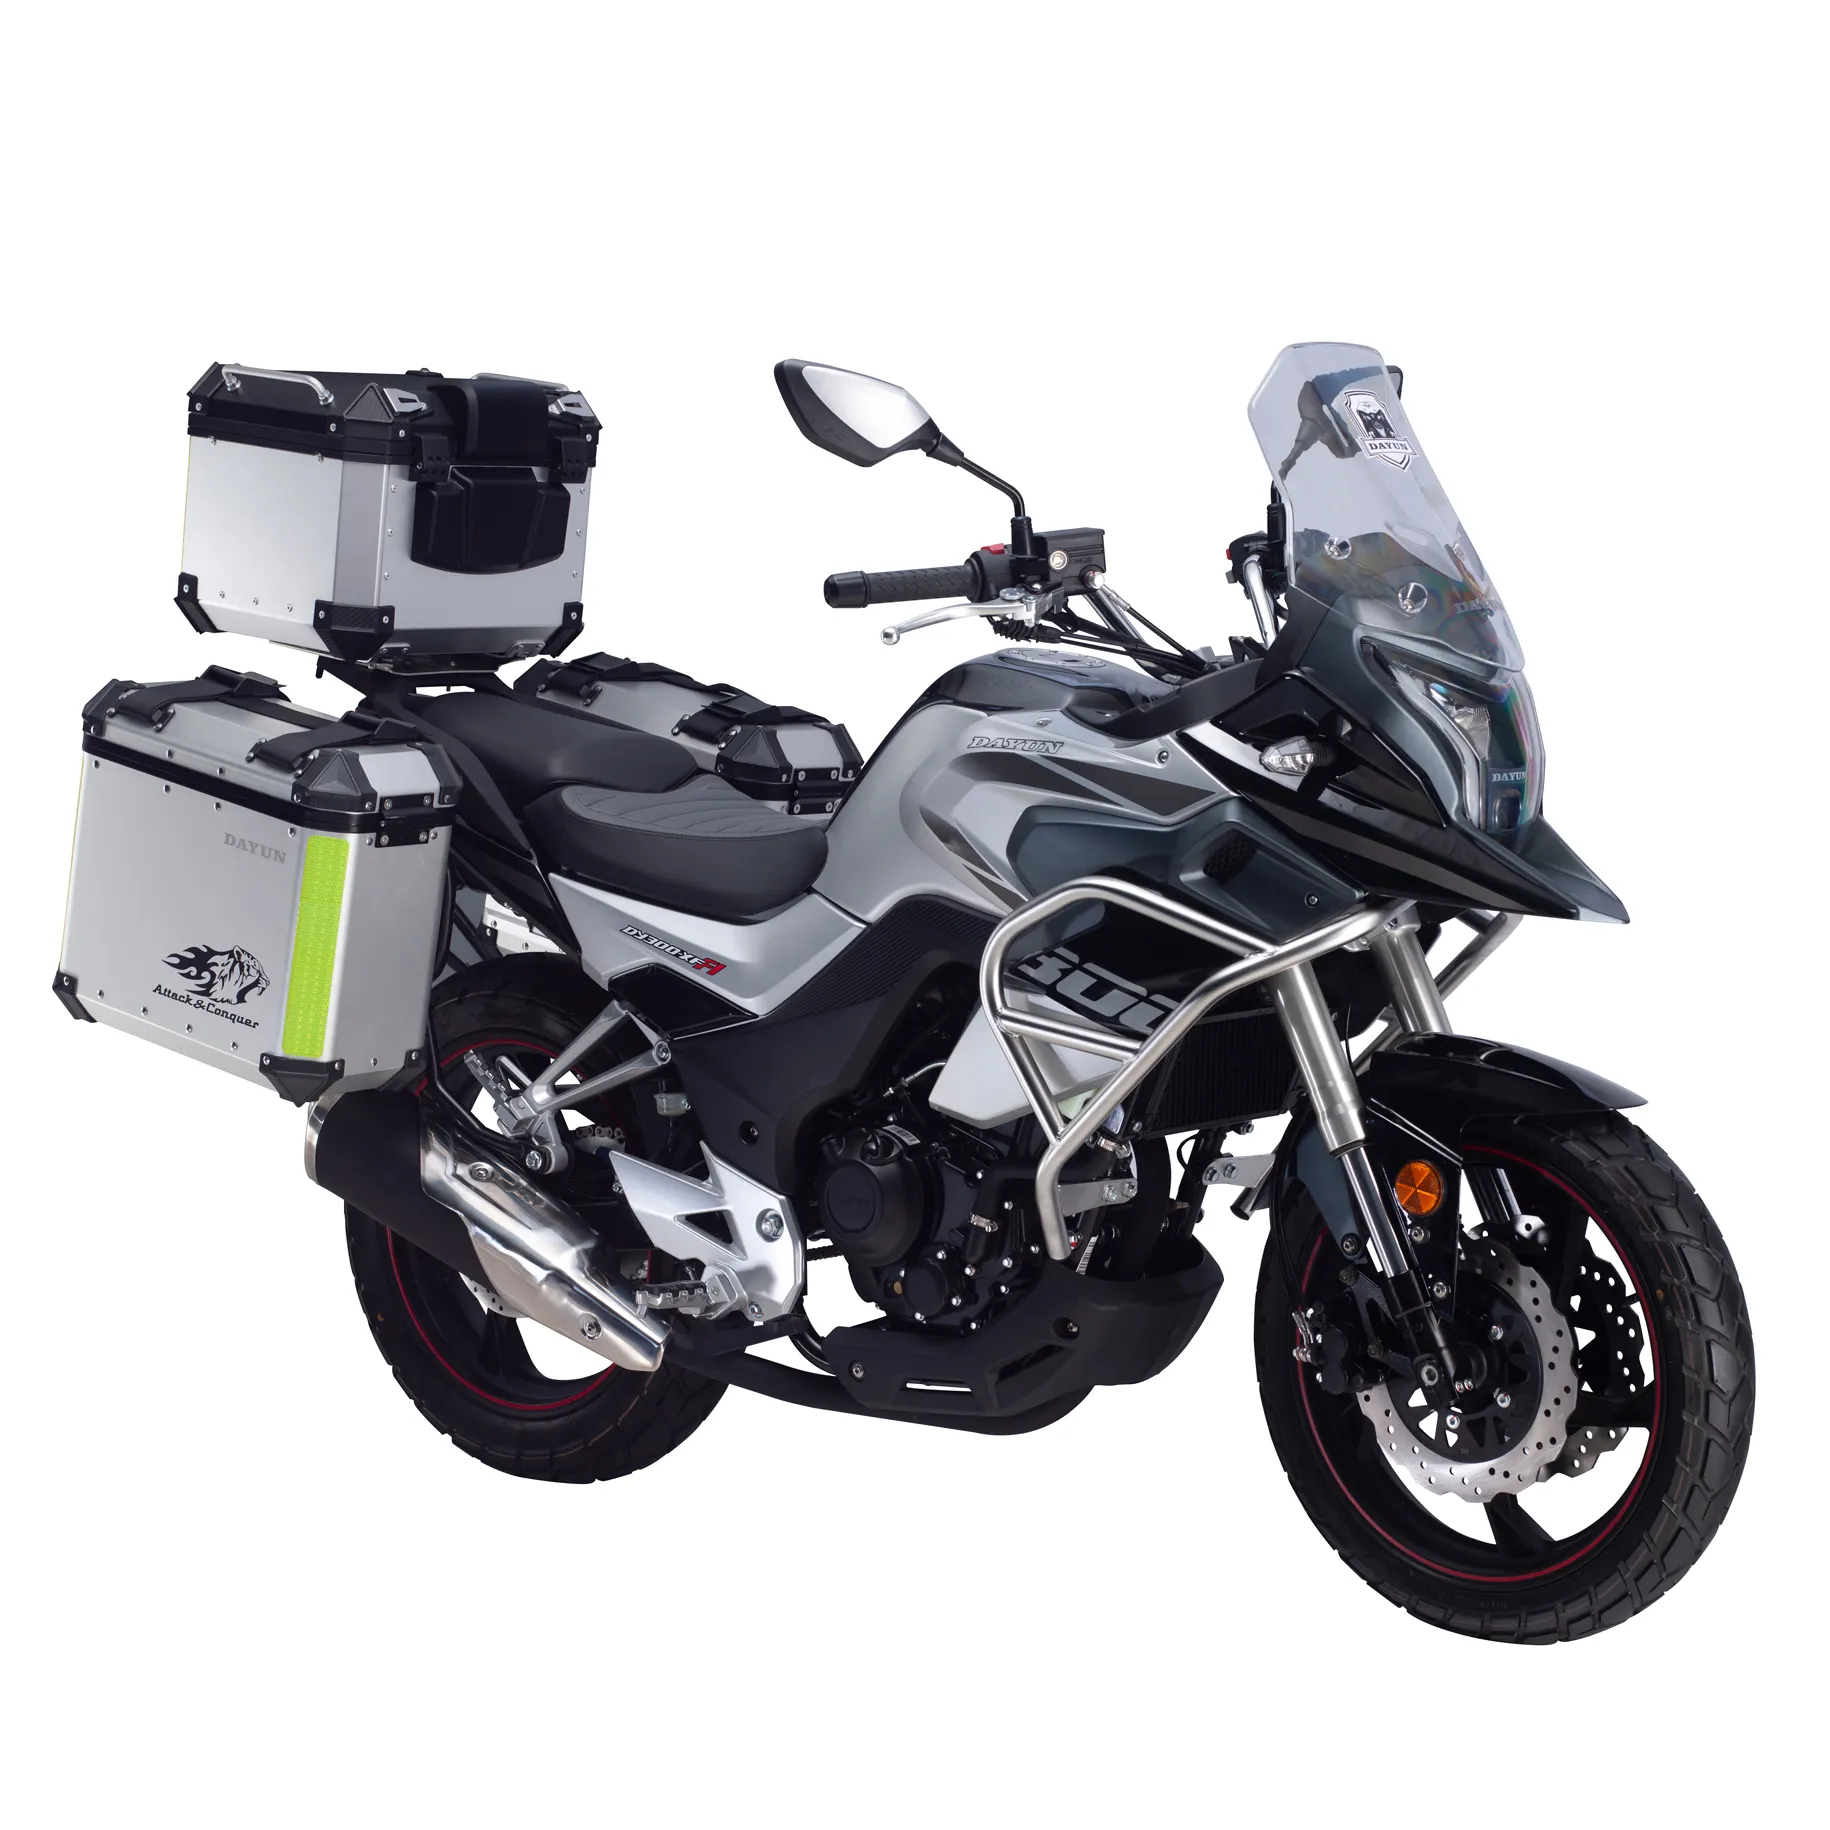 גבוהה-איכות ספורט אופנוע תוצרת סין, גדול-עקירה ספורט רכב עבור בני נוער, DAYUN 250cc/300cc